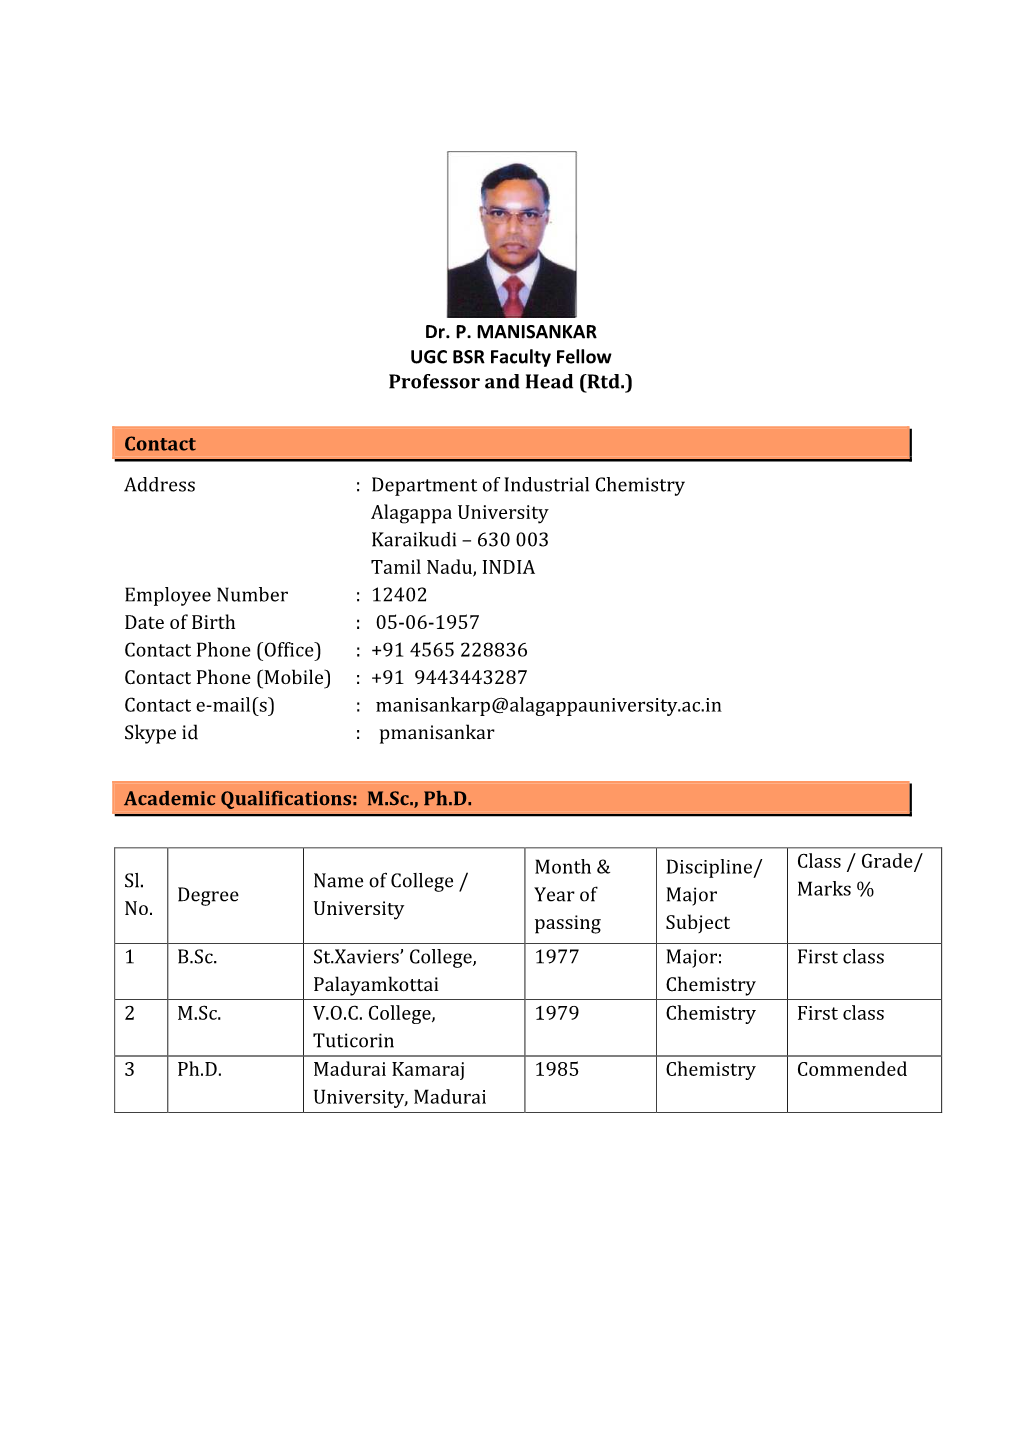 Dr P. Manisankar 19-9-17